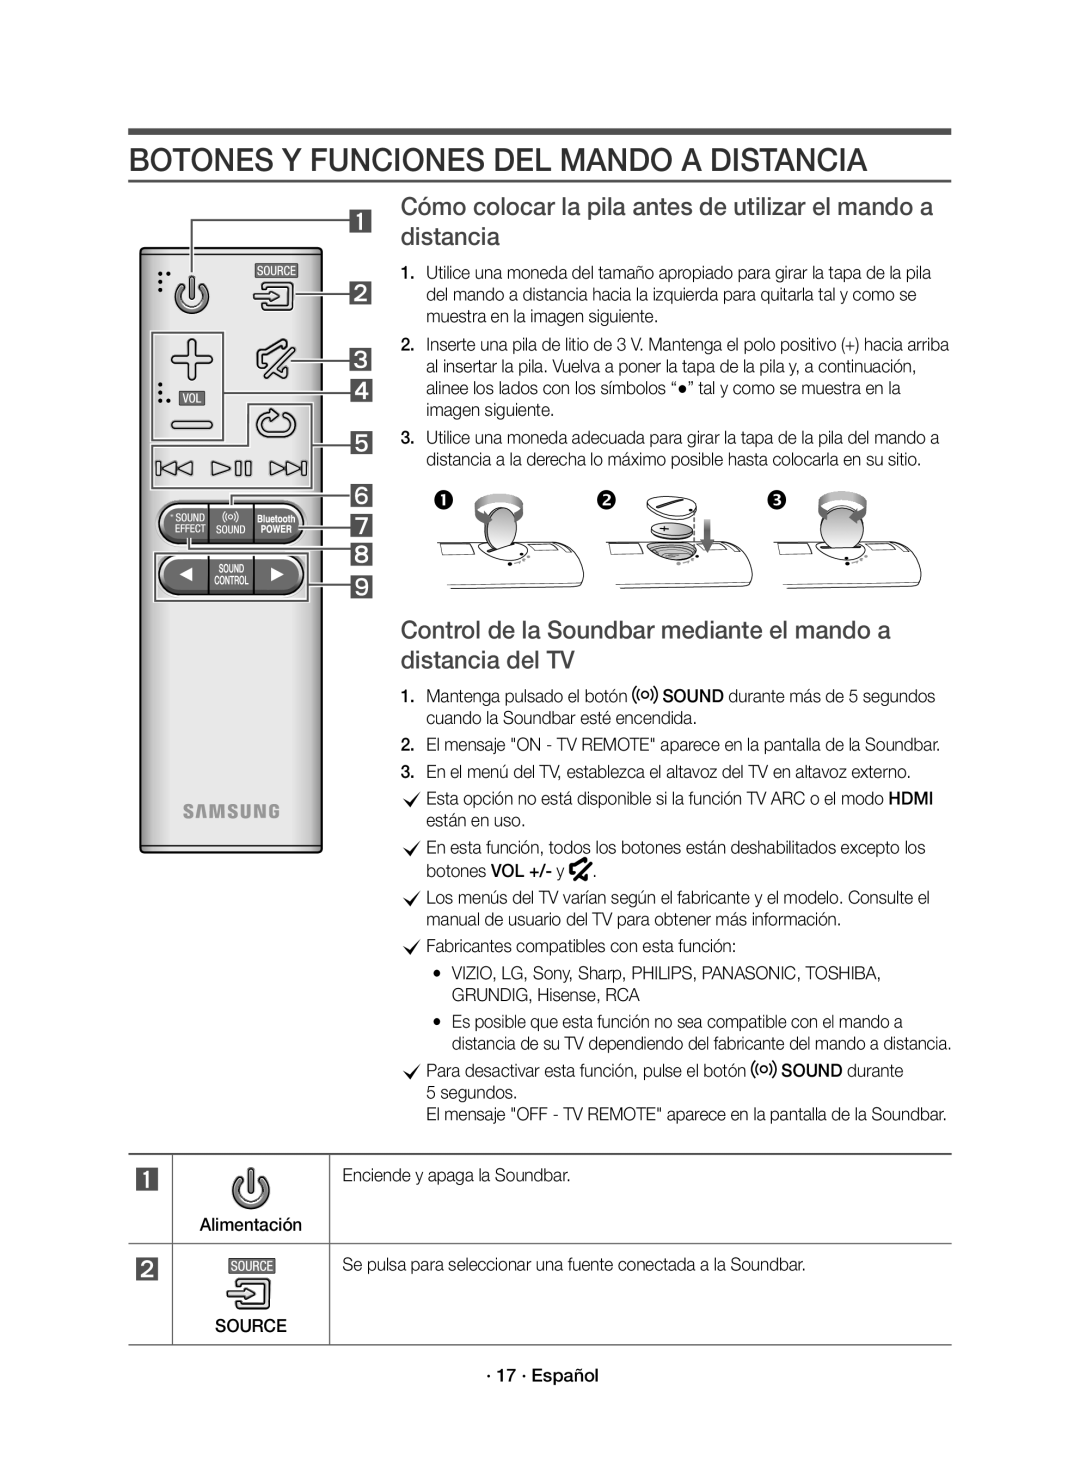 Samsung HW-K650/ZF Botones Y Funciones Del Mando A Distancia, Cómo colocar la pila antes de utilizar el mando a distancia 